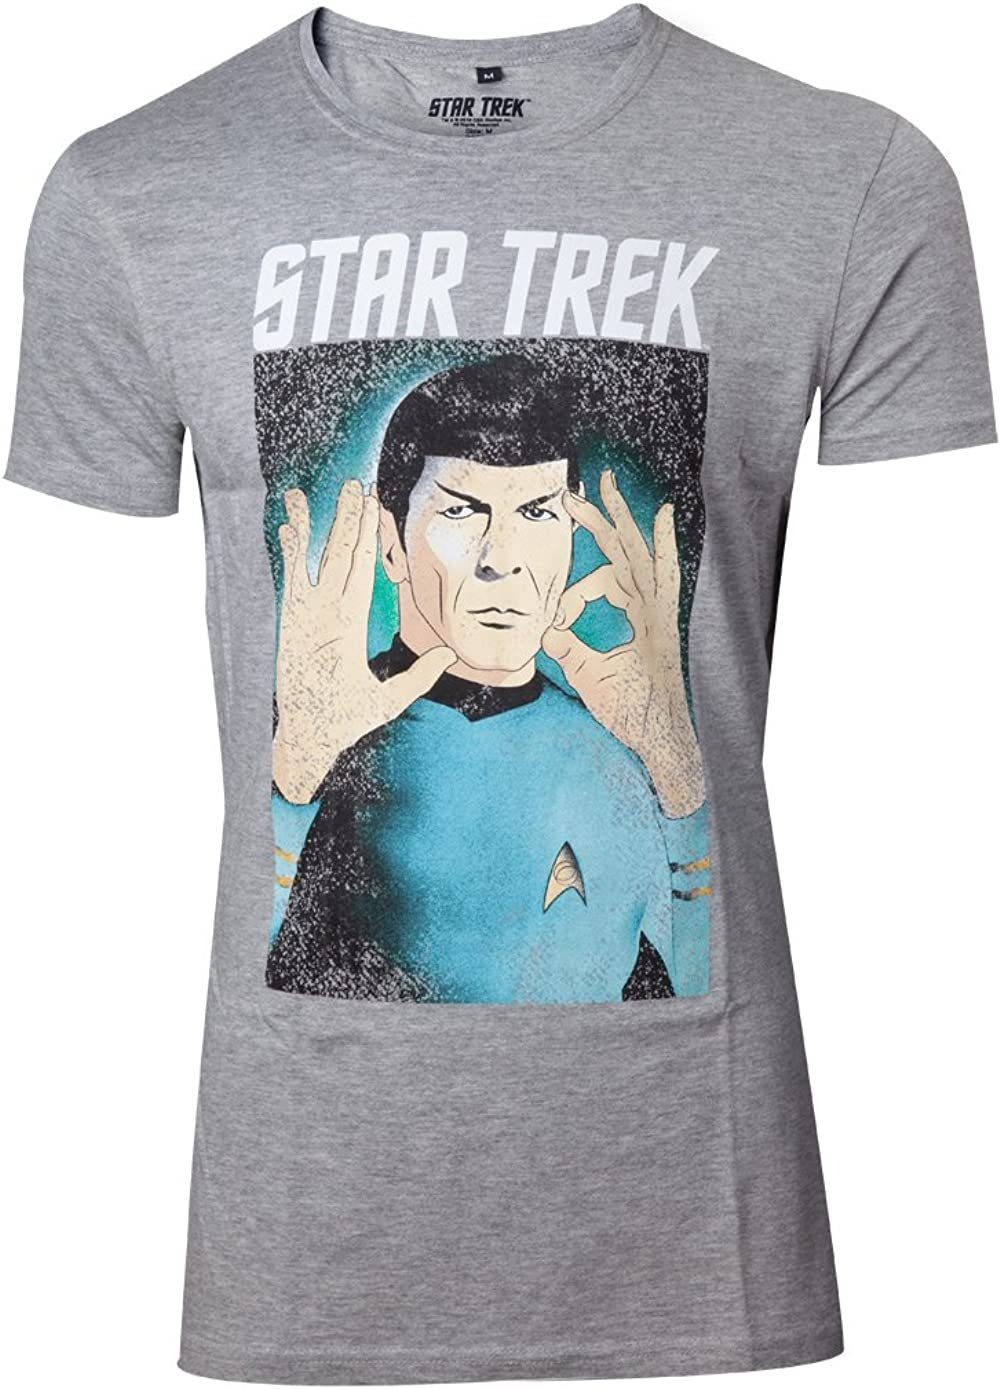 L STARTREK S Hellgrau M Herren XL Respect T-Shirt Star Print-Shirt Erwachsene Logic MELIERT Trek the Größen